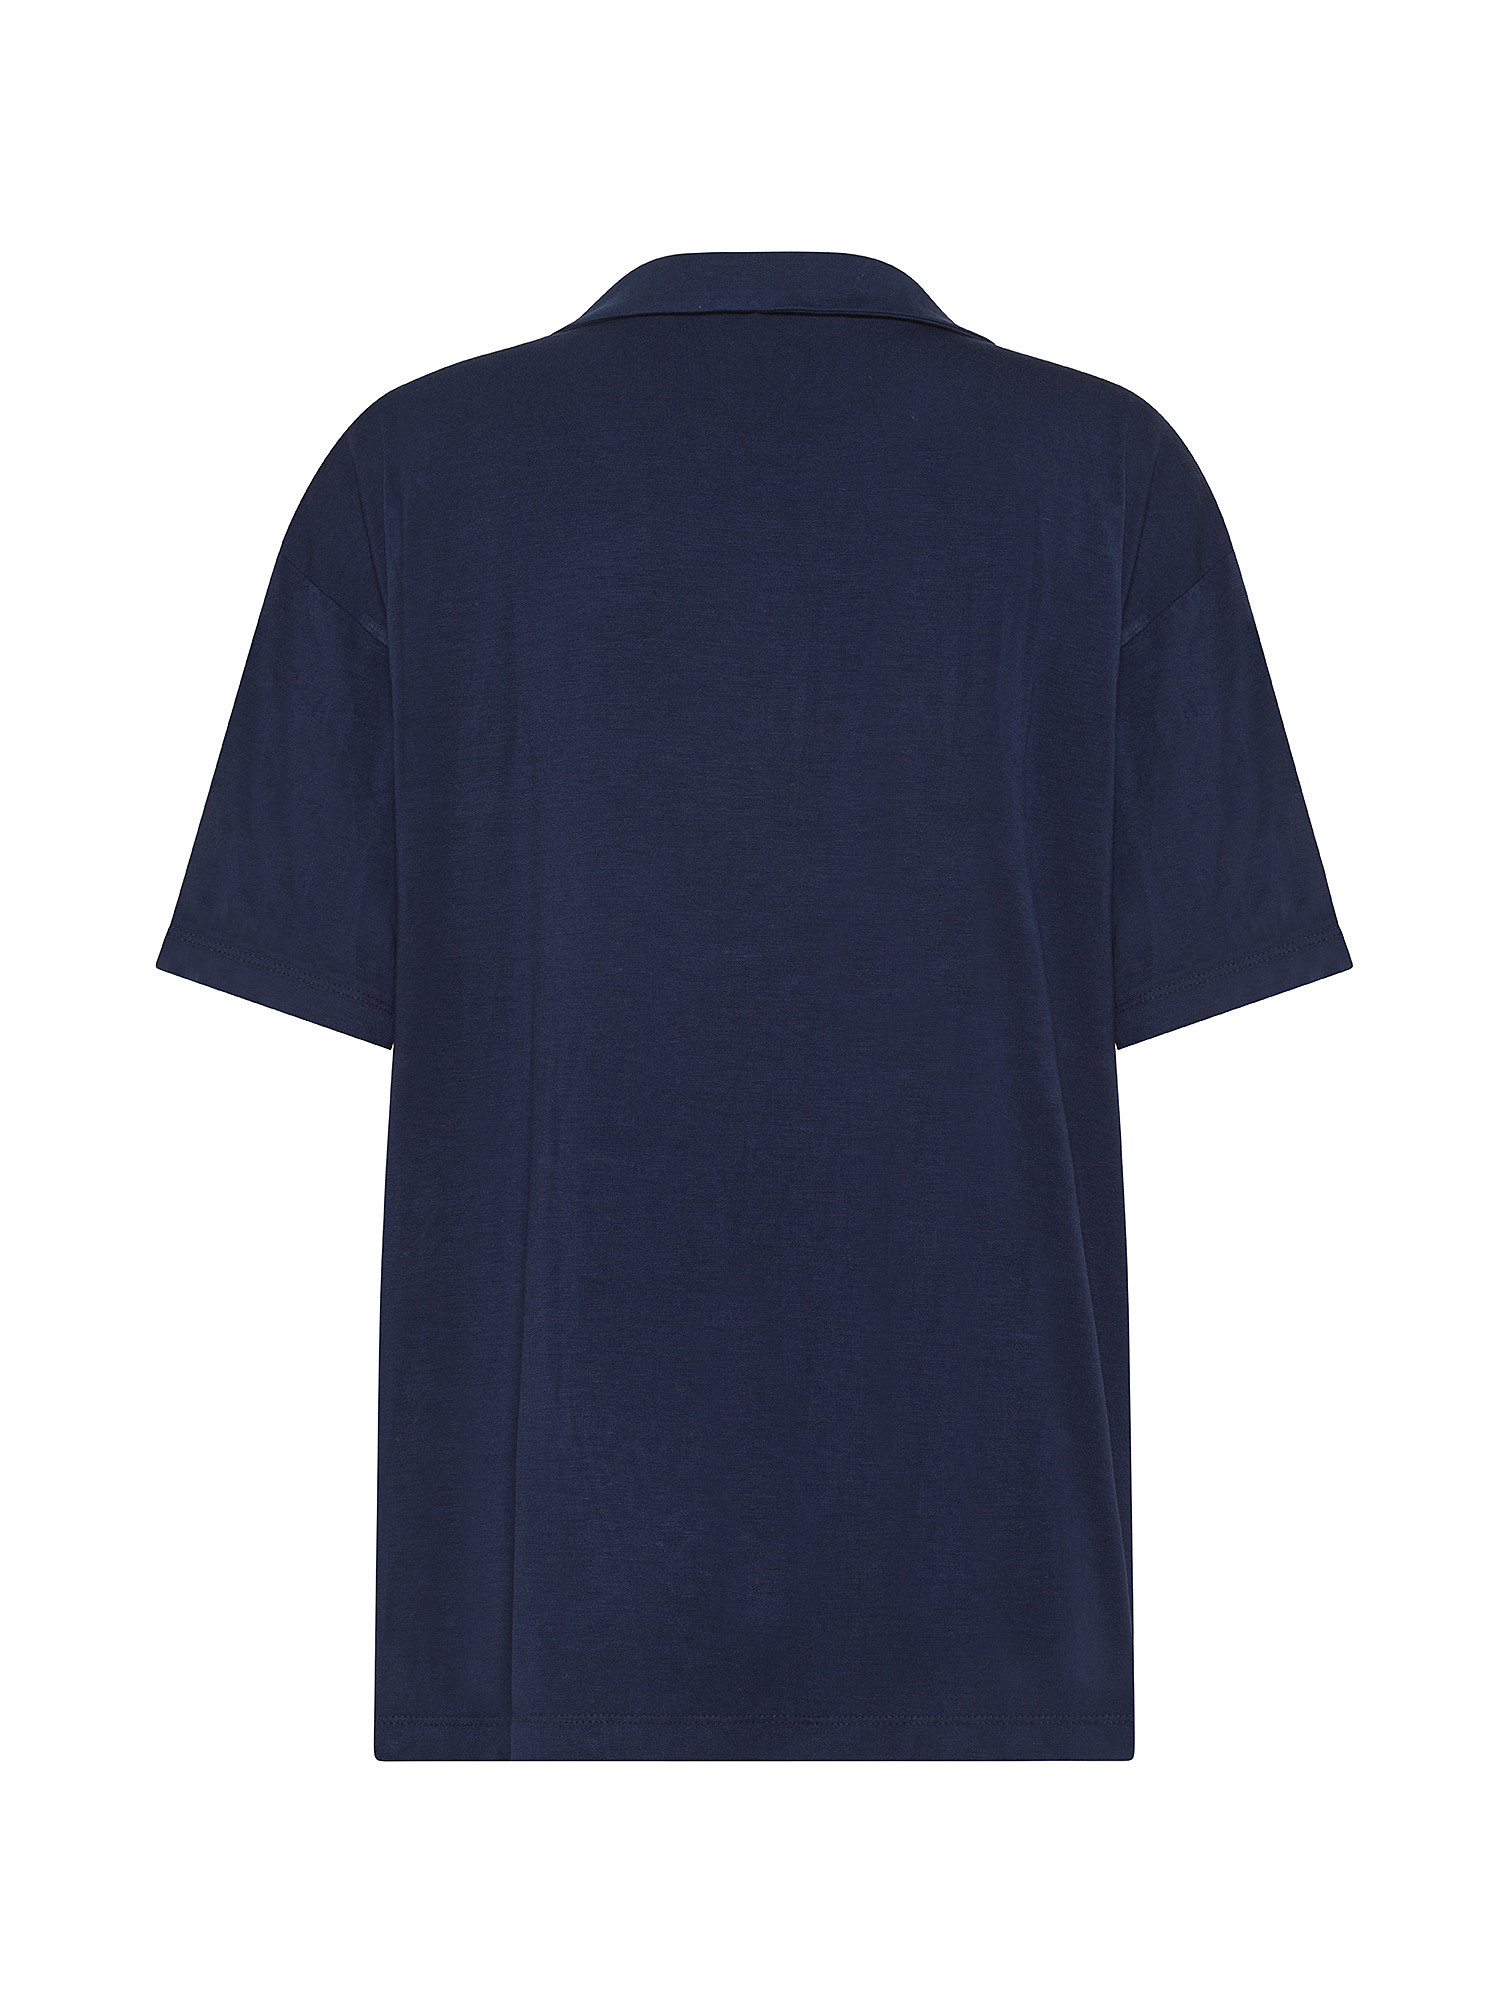 Giacca pigiama in viscosa di bamboo tinta unita, Blu, large image number 1